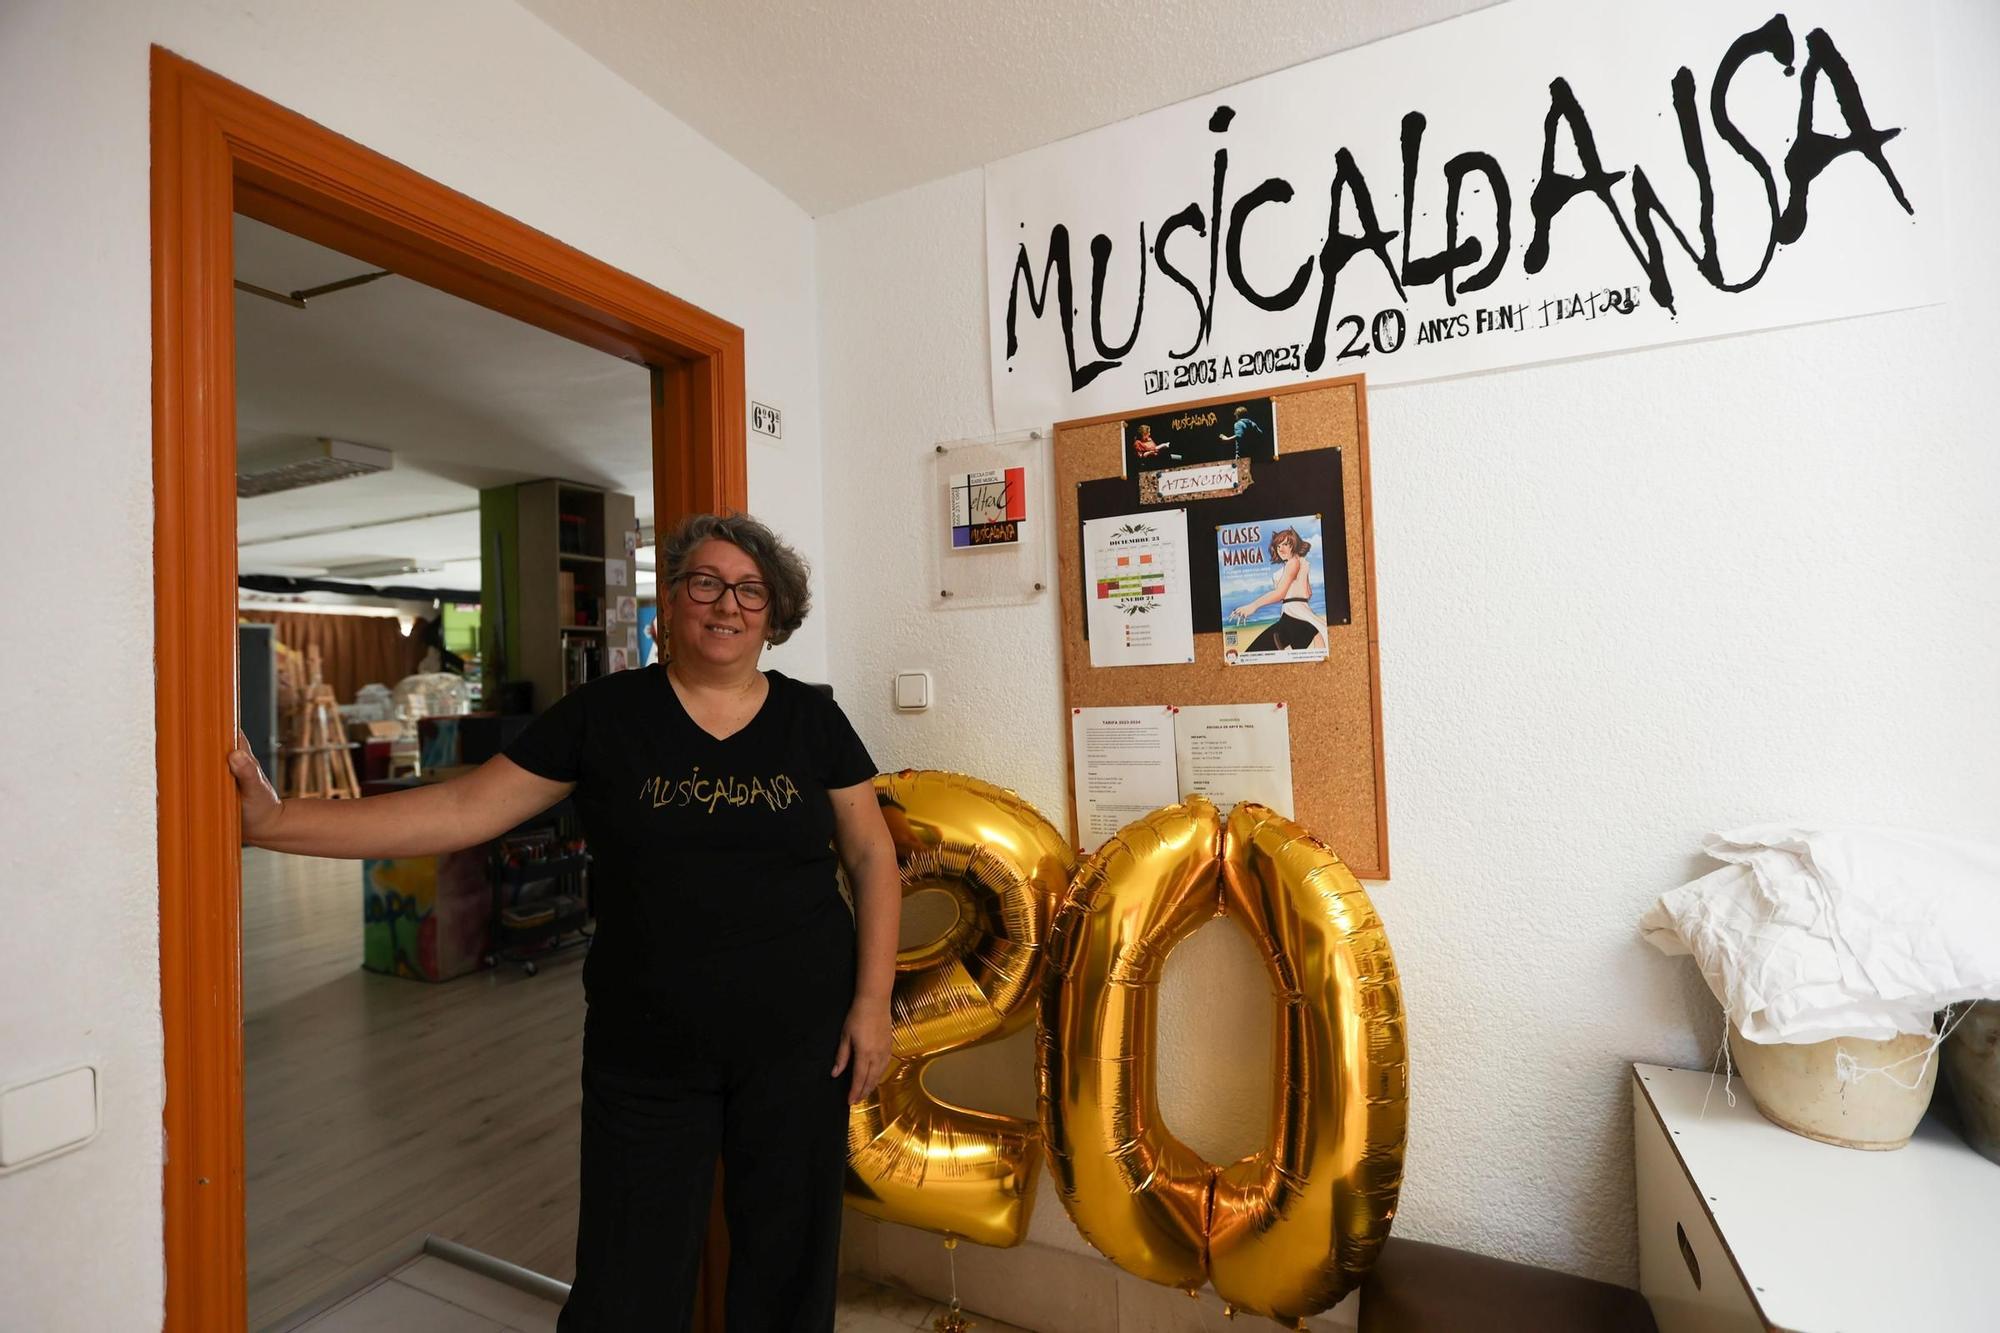 Galería: 20 aniversario de Musicaldança